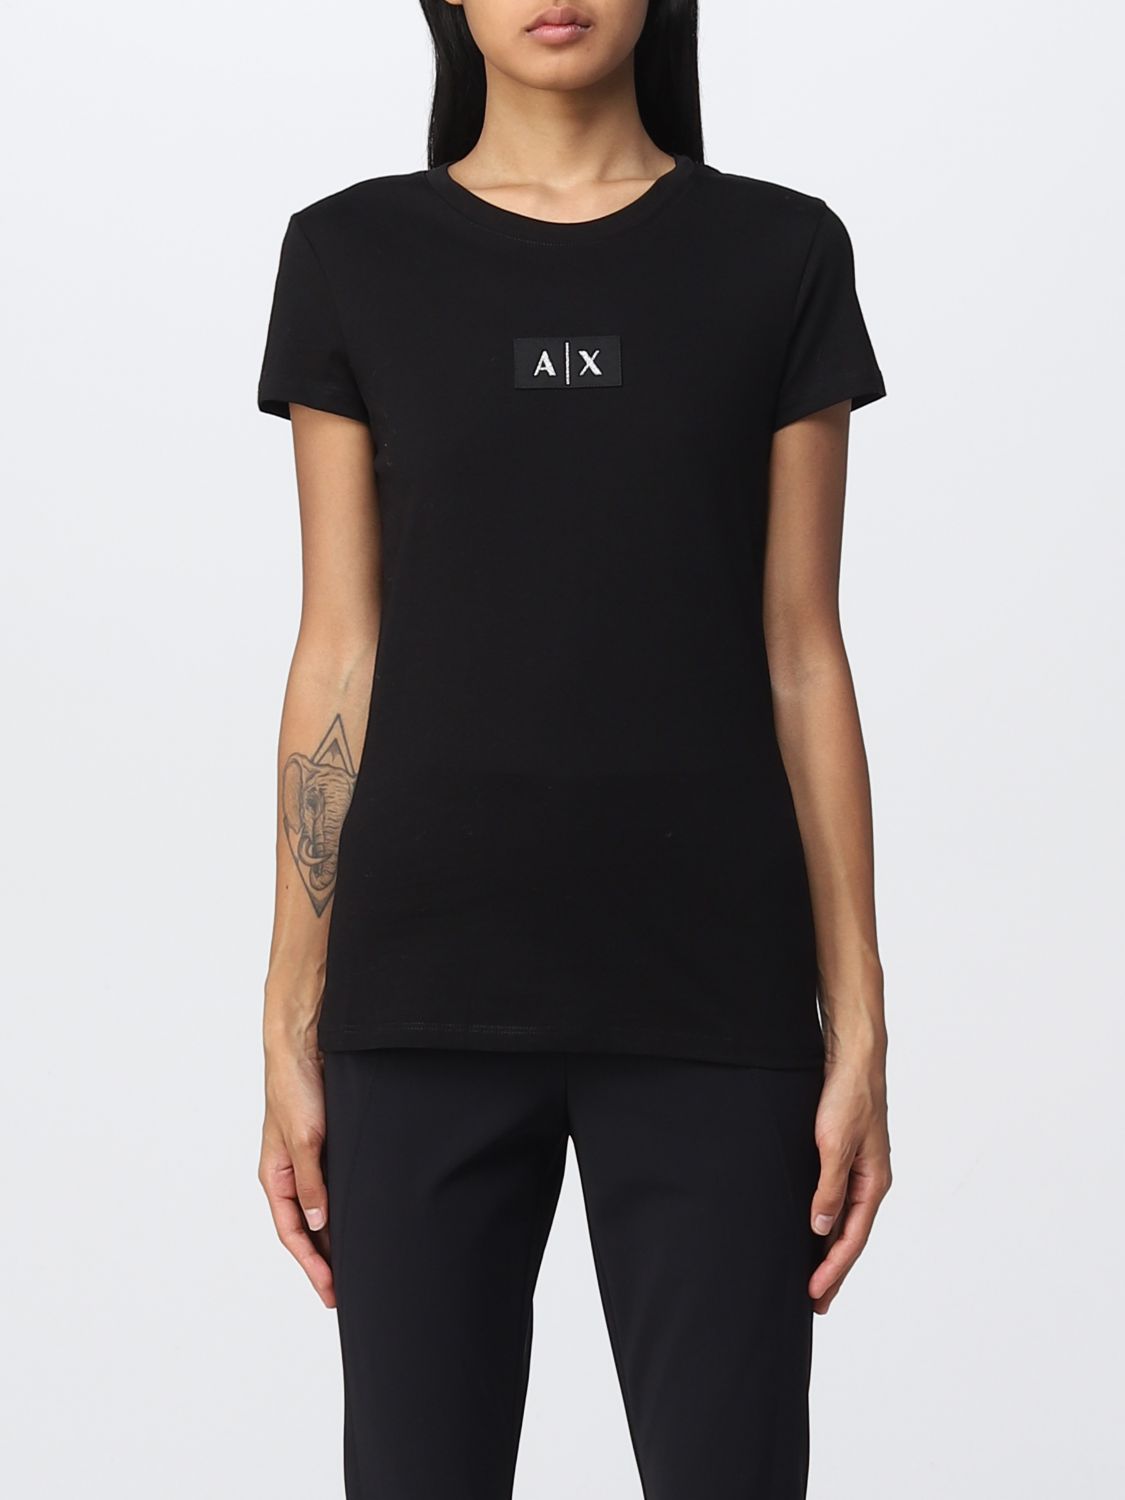 ARMANI EXCHANGE: T-Shirt woman - Black | T-Shirt Armani Exchange ...